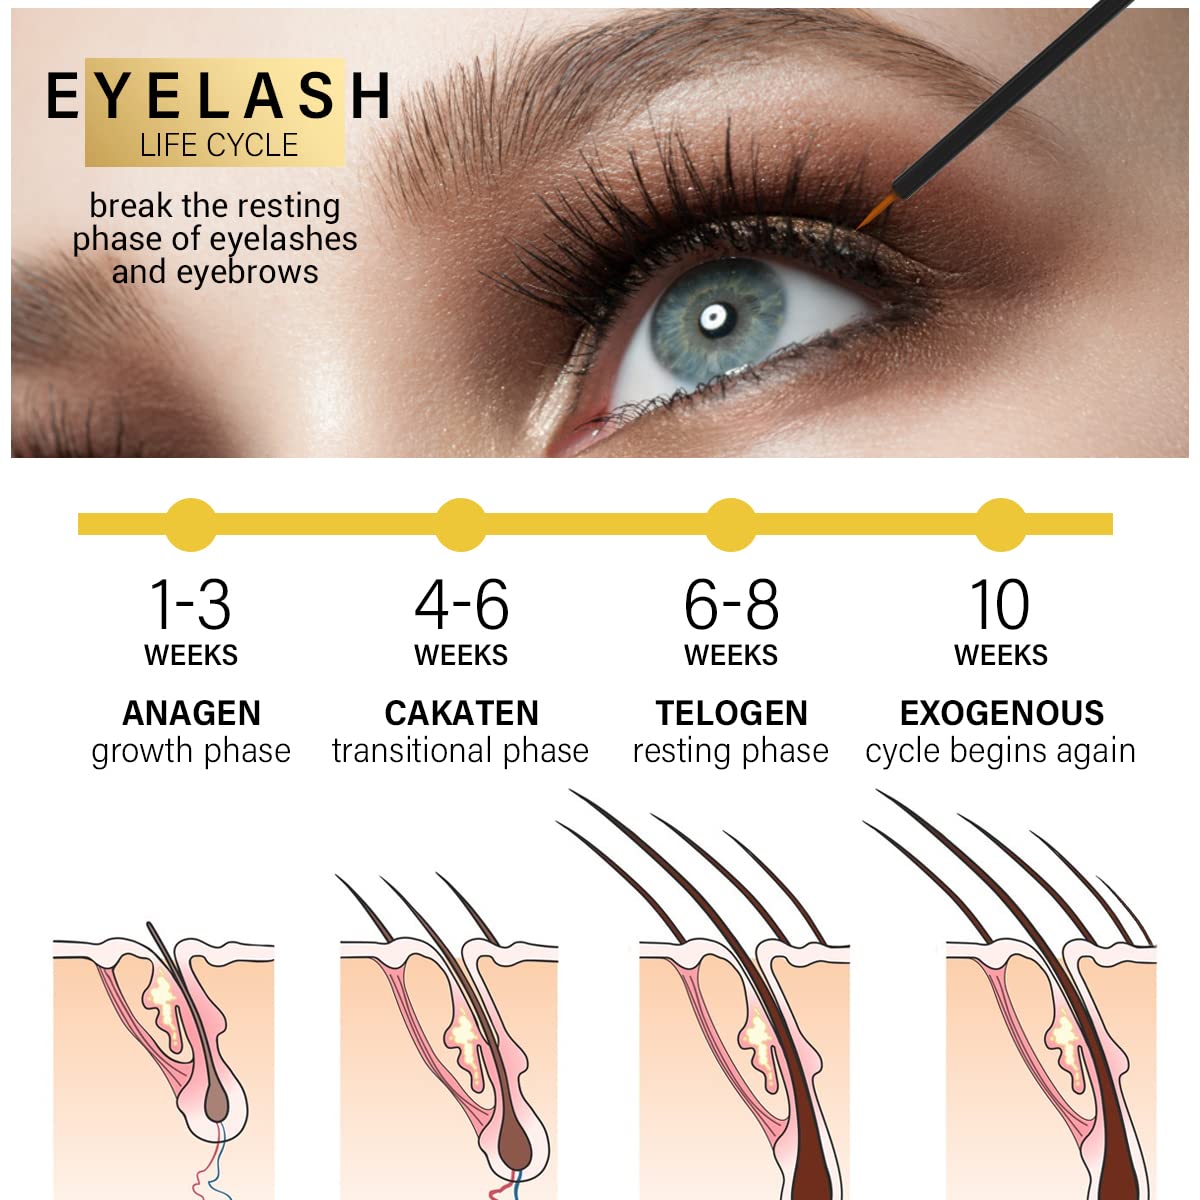 Premium Eyelash Growth Serum - 5ml Fuller & Longer Looking Eyelashes Lash Enhancing Serum for Natural Lashes or Lash Extensions & Brows, Vegan & Cruelty-Free gold